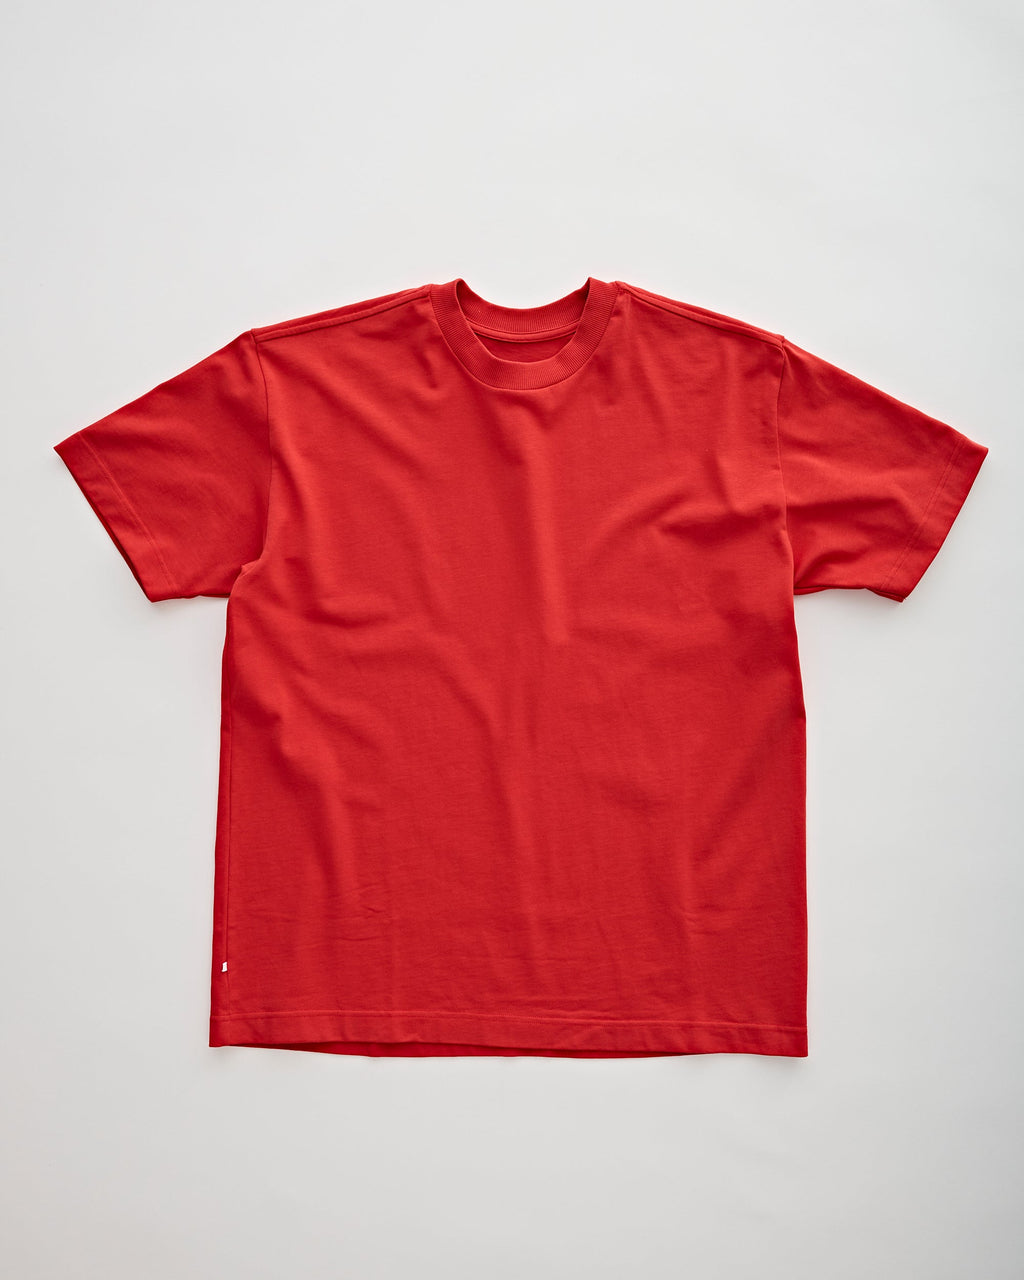 Tenue. Bruce Lava T-shirt S/S Men